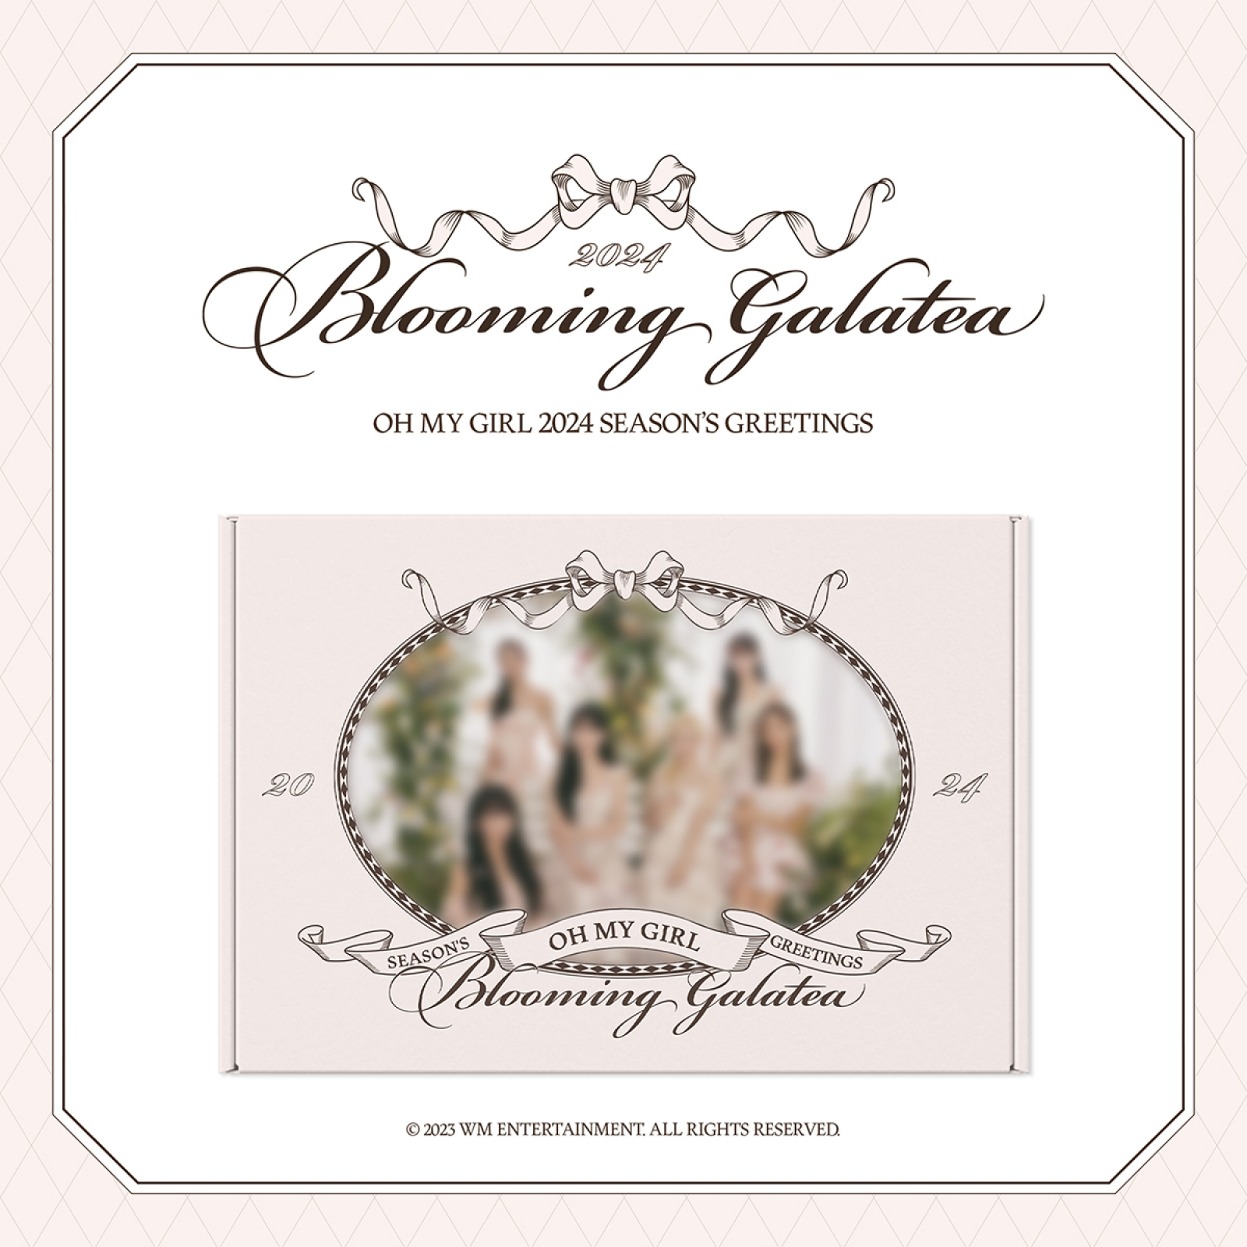 [OH MY GIRL] - 2024 Season Greeting [Blooming Galatea]